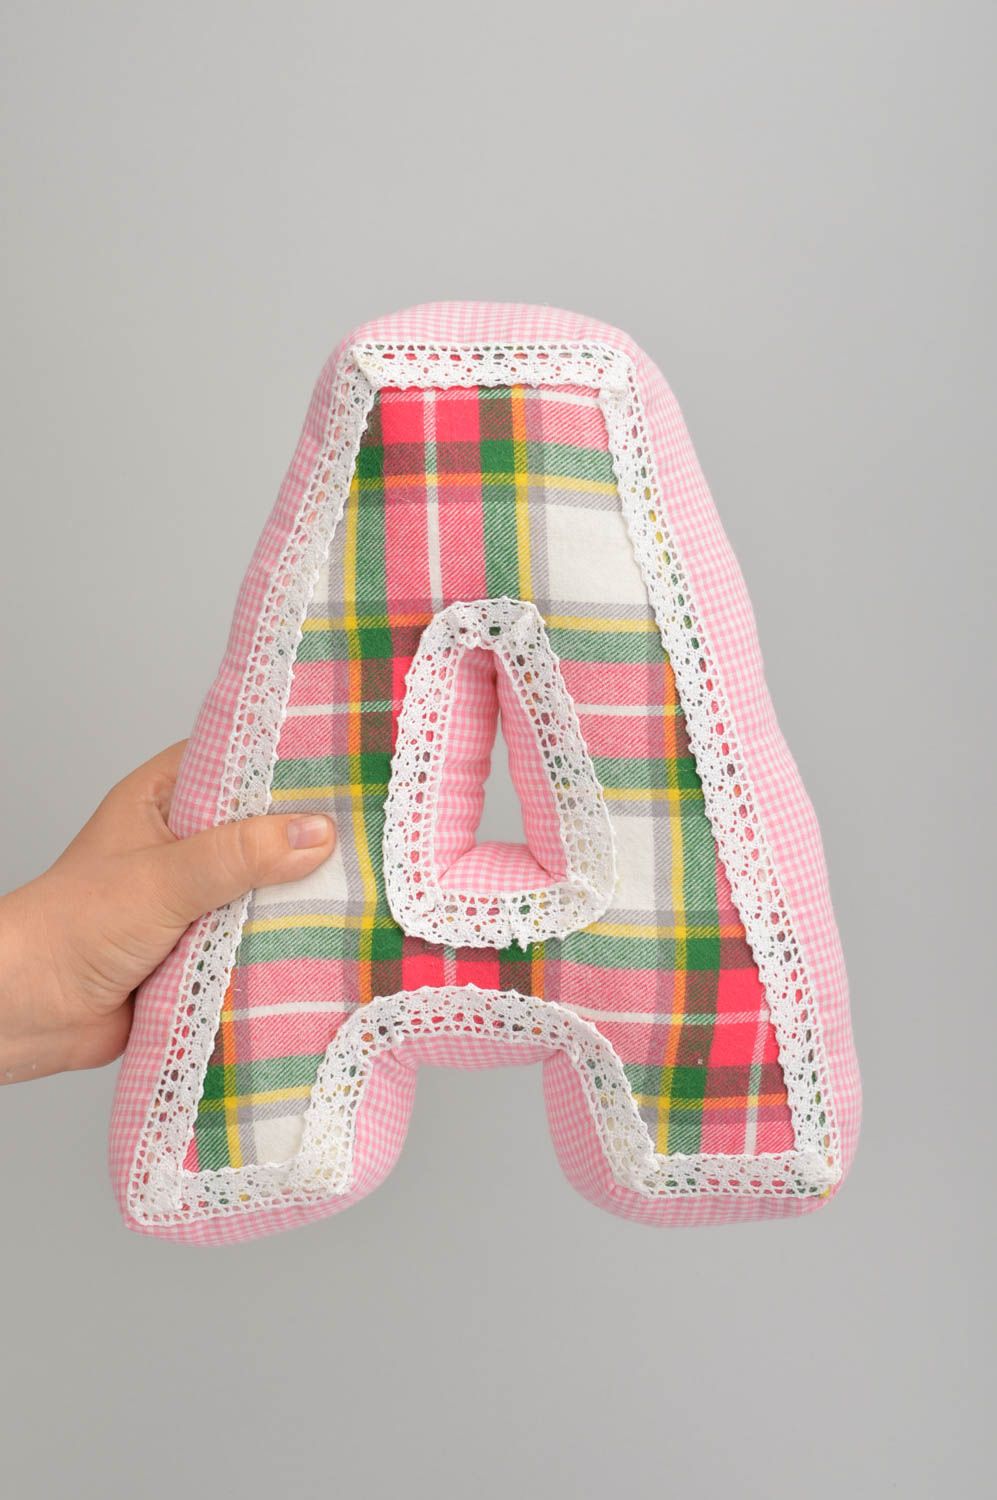 Интерьерная подушка в виде буквы А из хлопка ручной работы розовая в клеточку фото 2